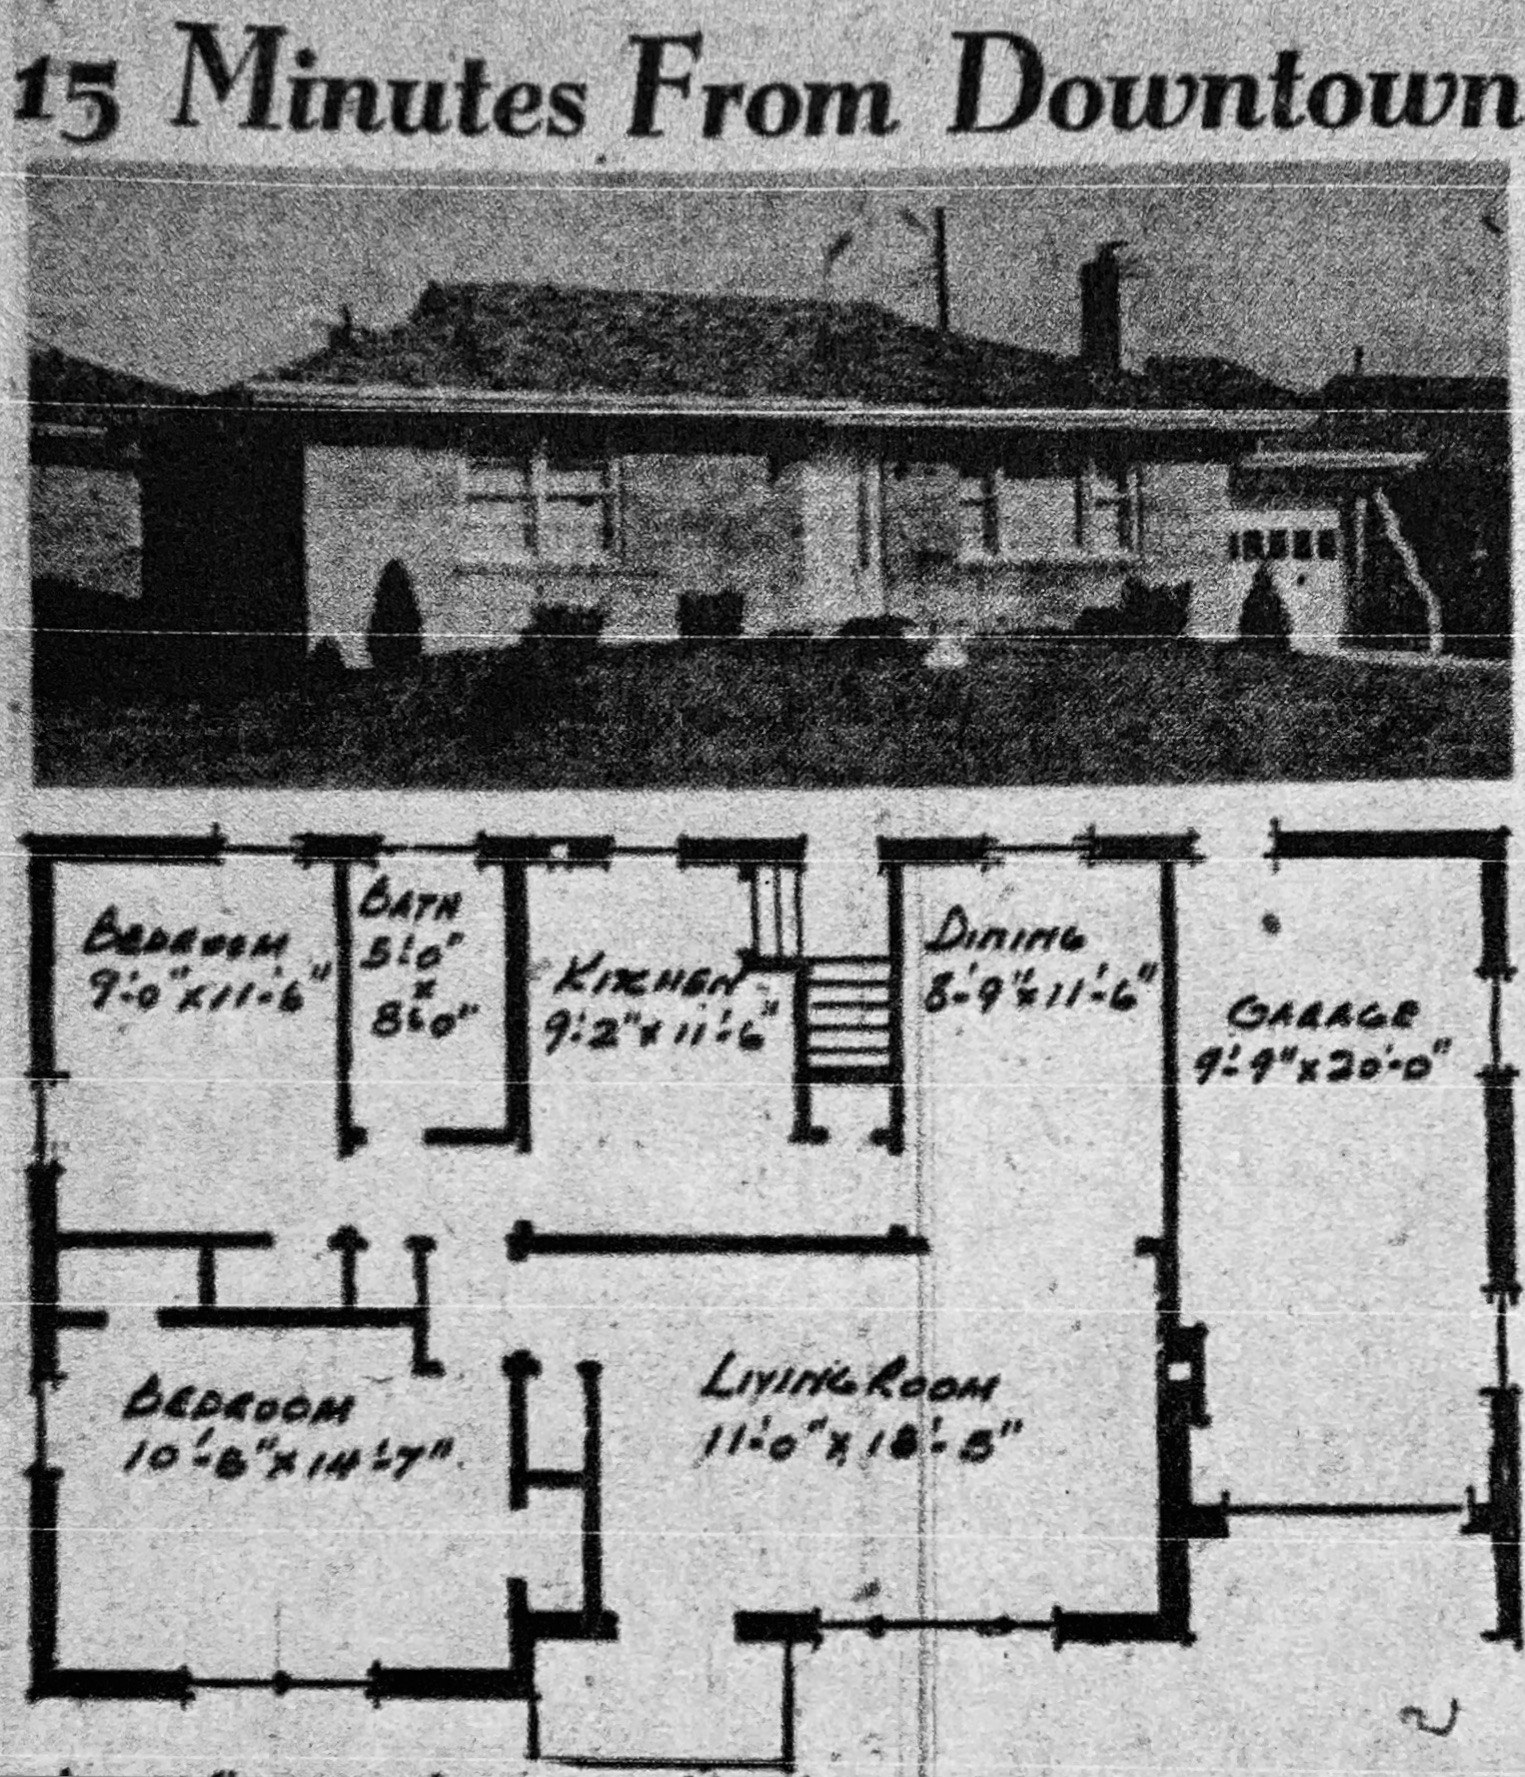 HATHAWAY HILLS: 2 Bedroom Floor Plan. 